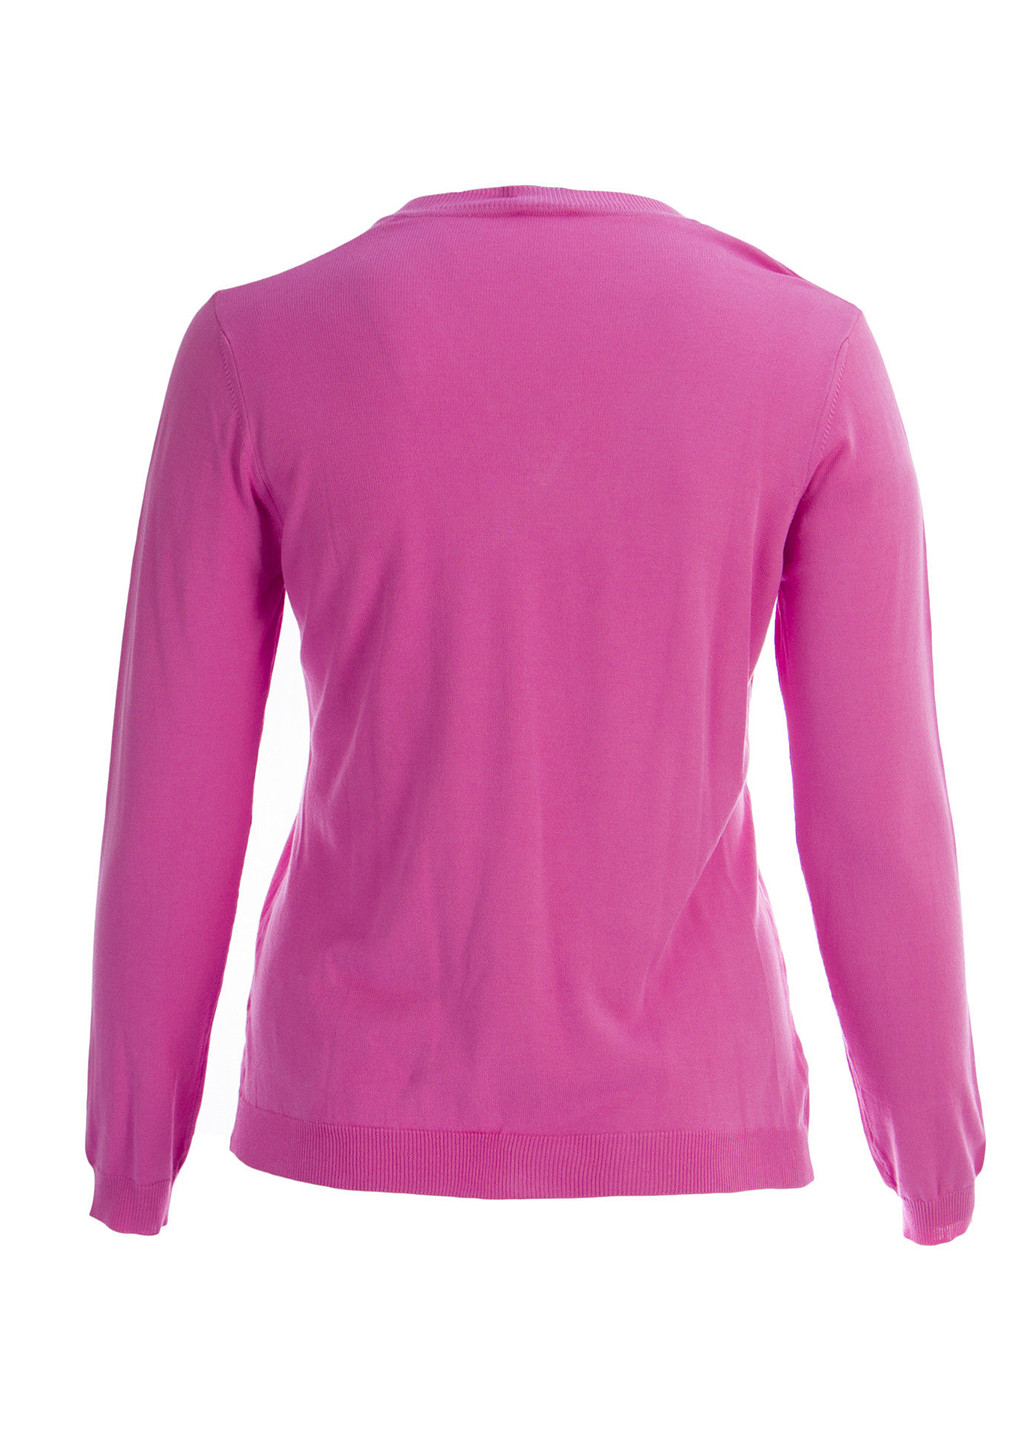 Розовый демисезонный пуловер пуловер Marina Rinaldi